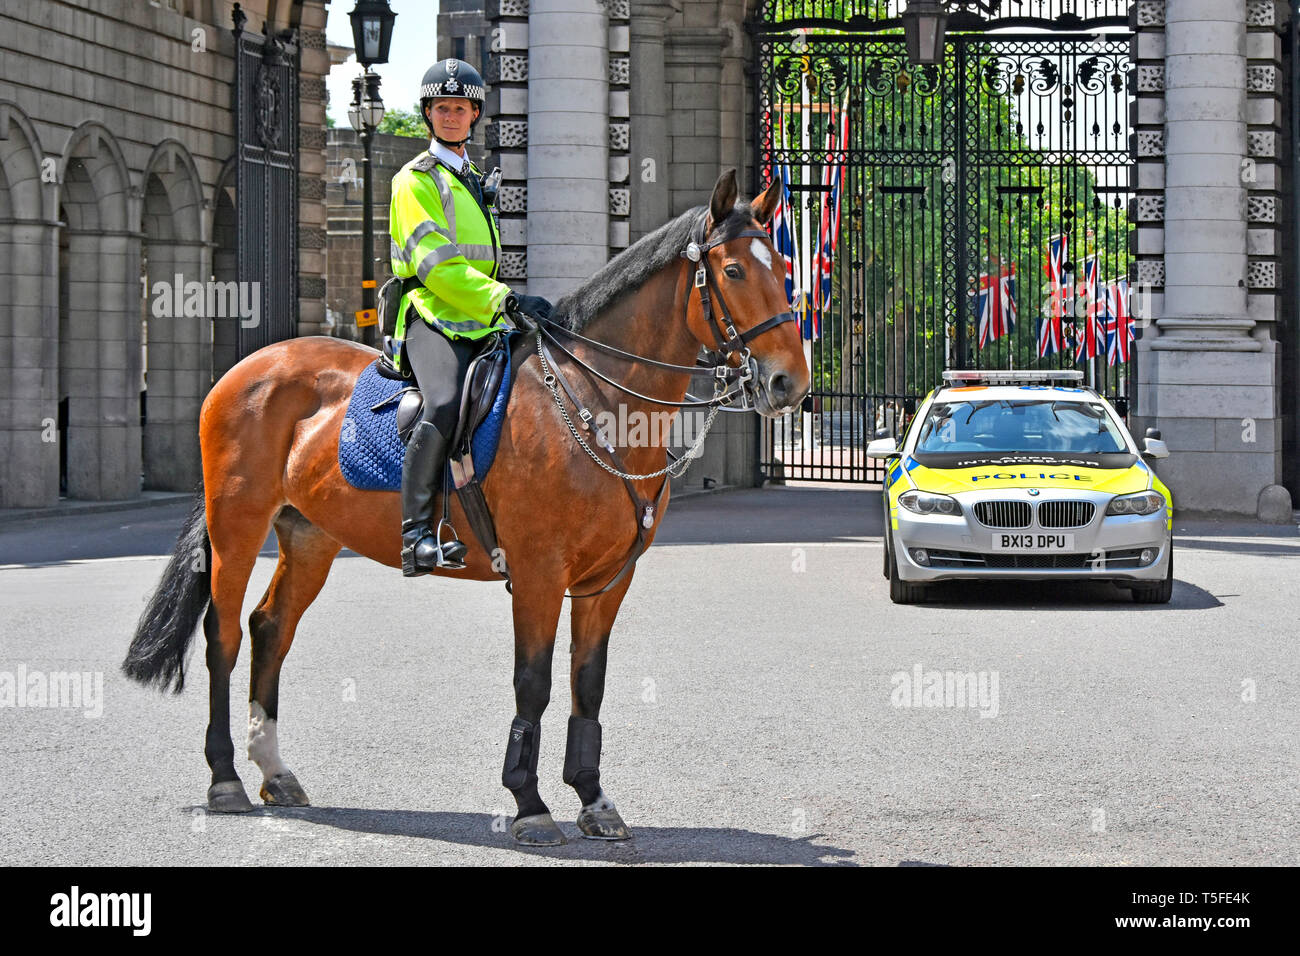 Donna Londra WPC British Metropolitan police donna ufficiale cavallo alta viz giacca e cavallo controllo del traffico doveri Admiralty Arch Londra Inghilterra UK Foto Stock